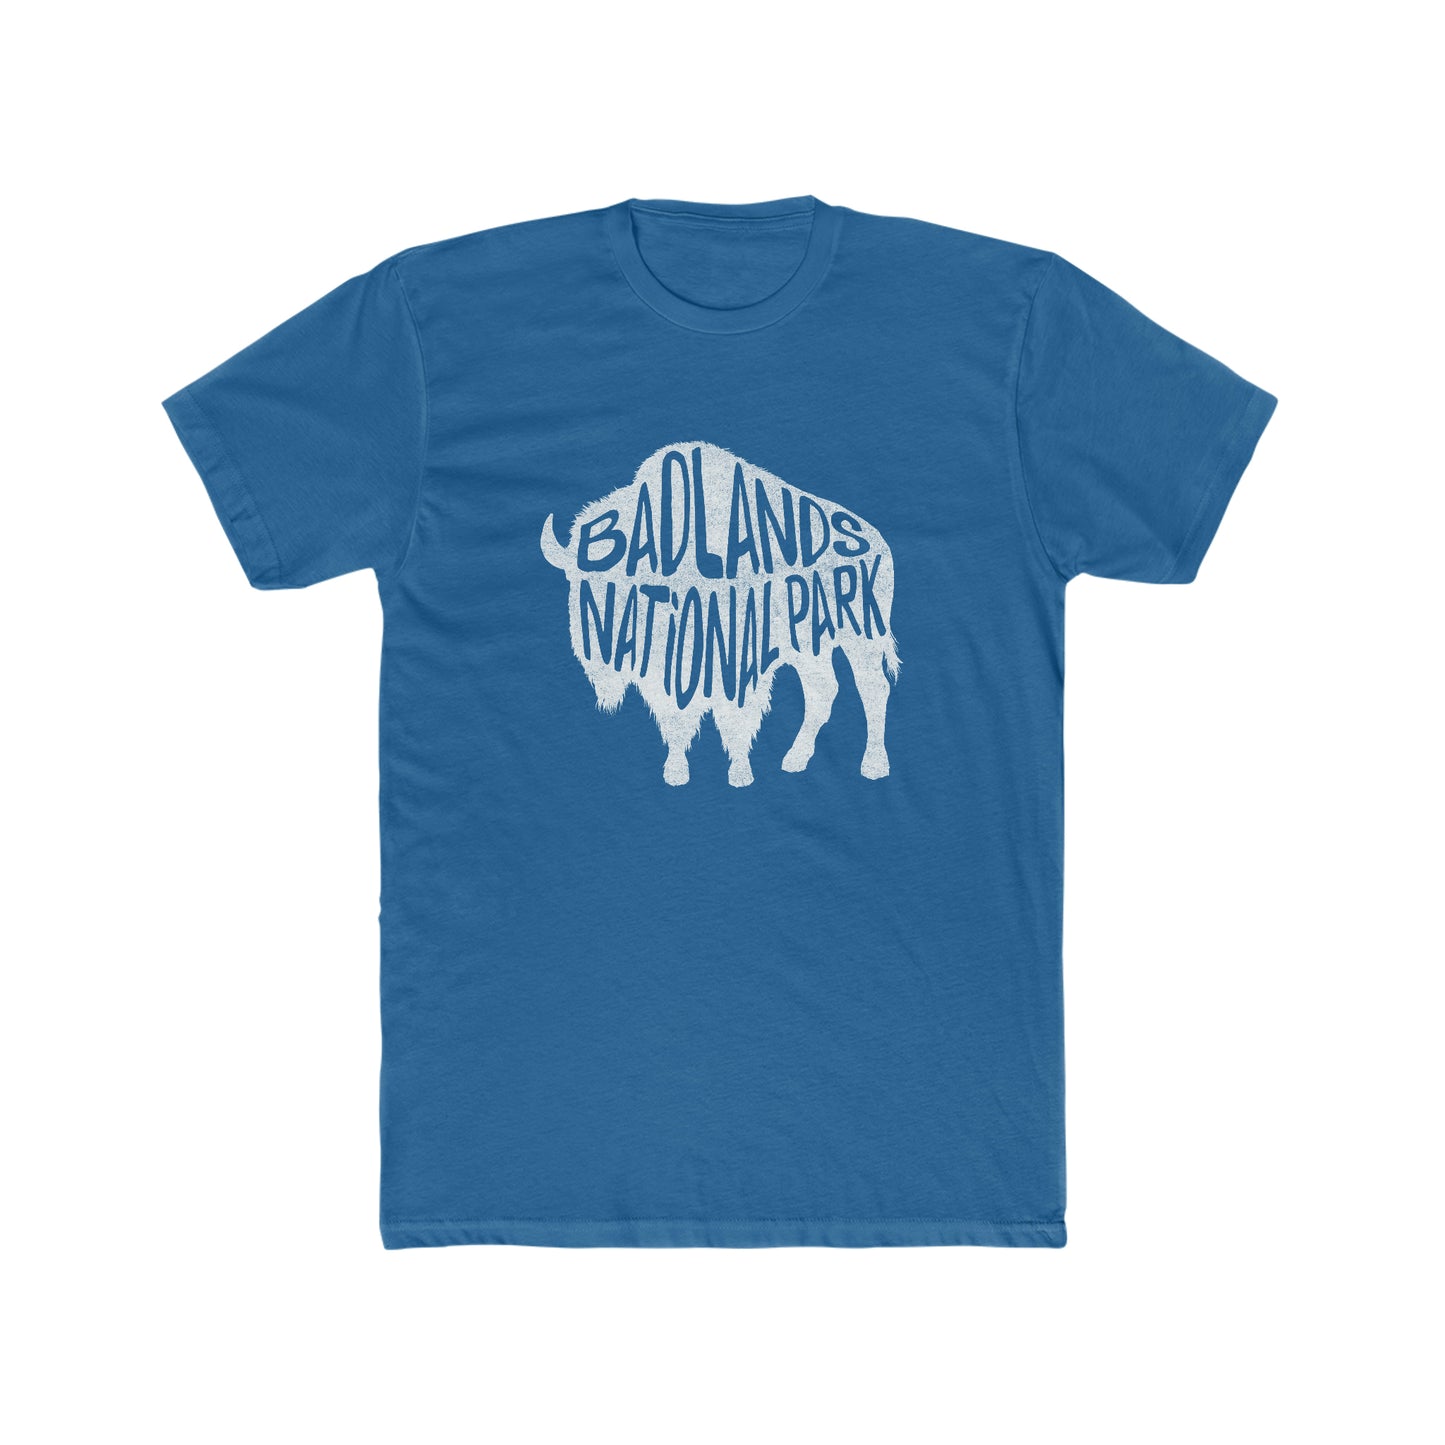 Badlands National Park T-Shirt - Bison